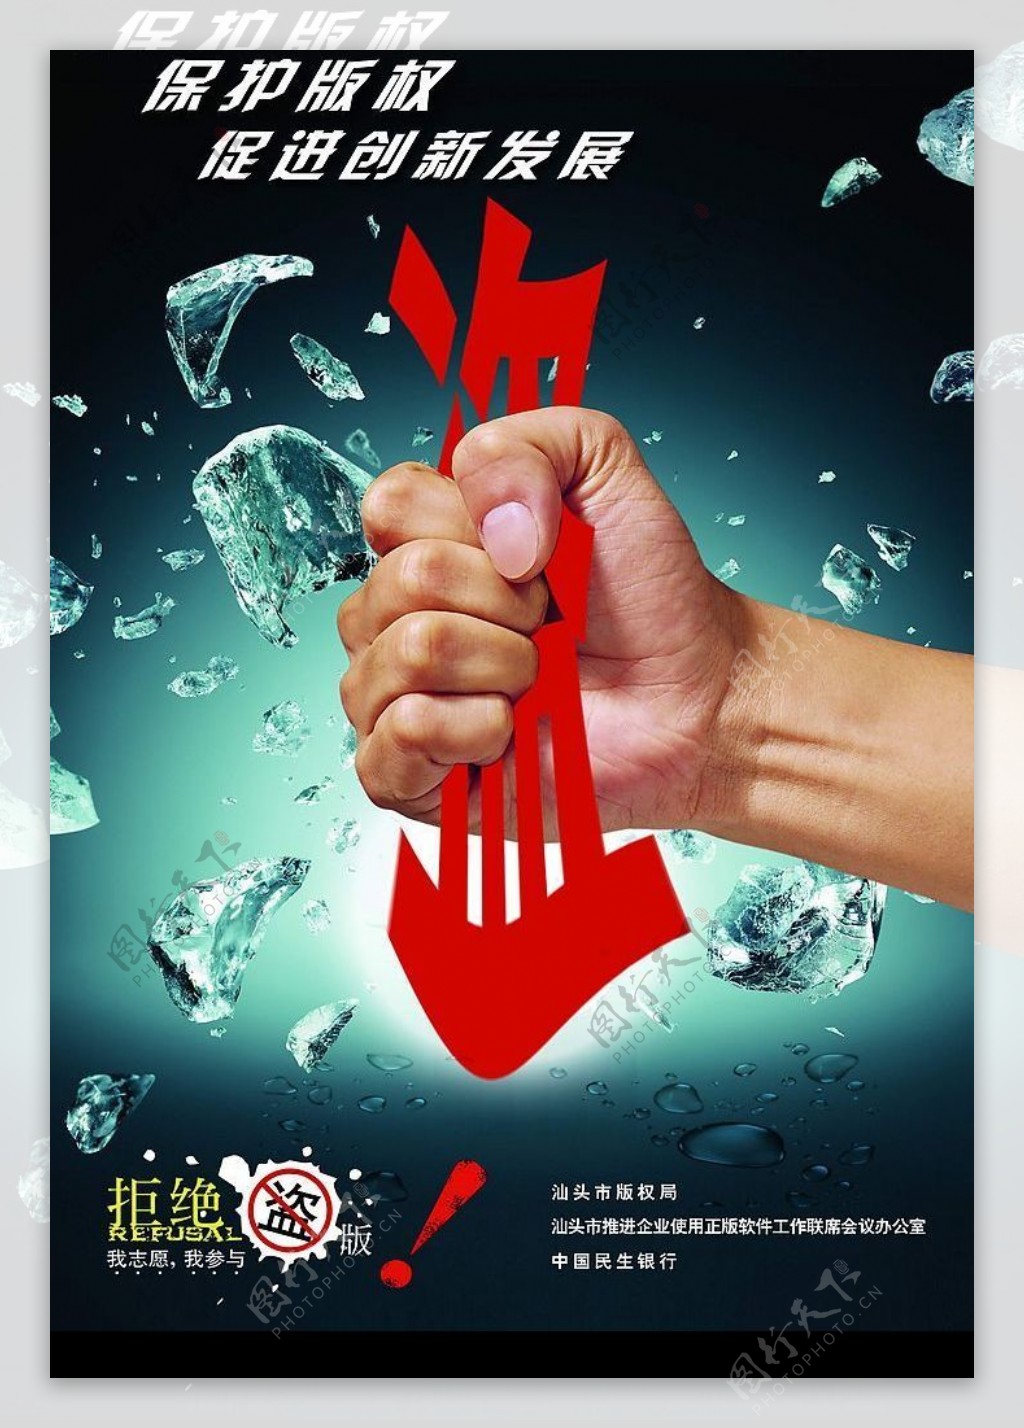 汕头市版权局保护正版打击盗版促进创新发展海报拳头篇图片